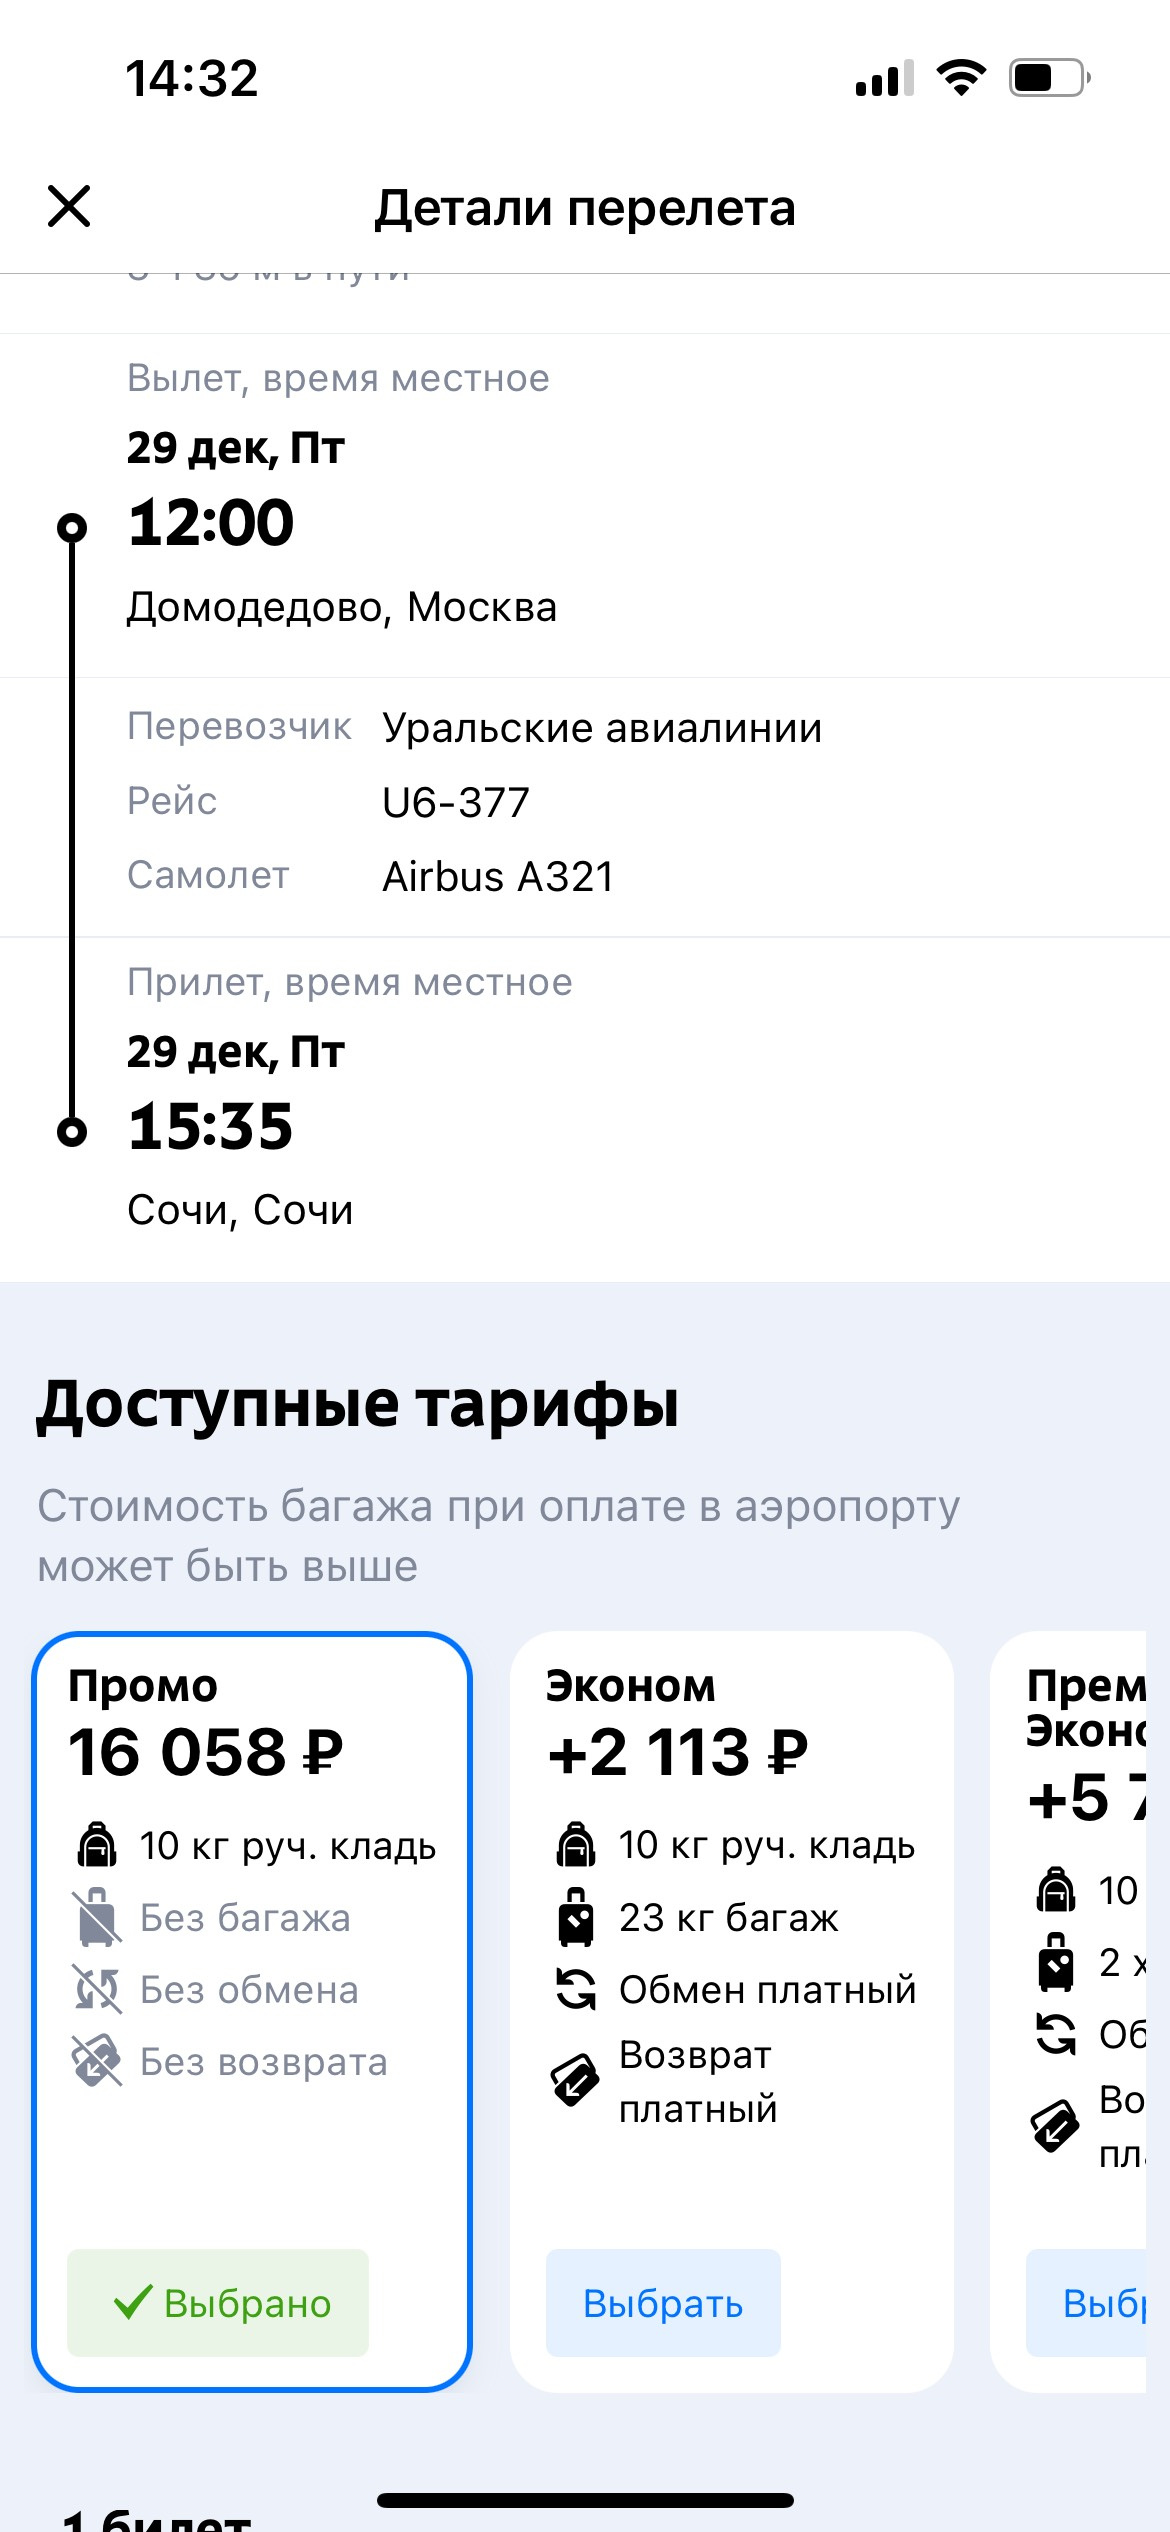 Рейс «Уральских авиалиний» на 29 декабря